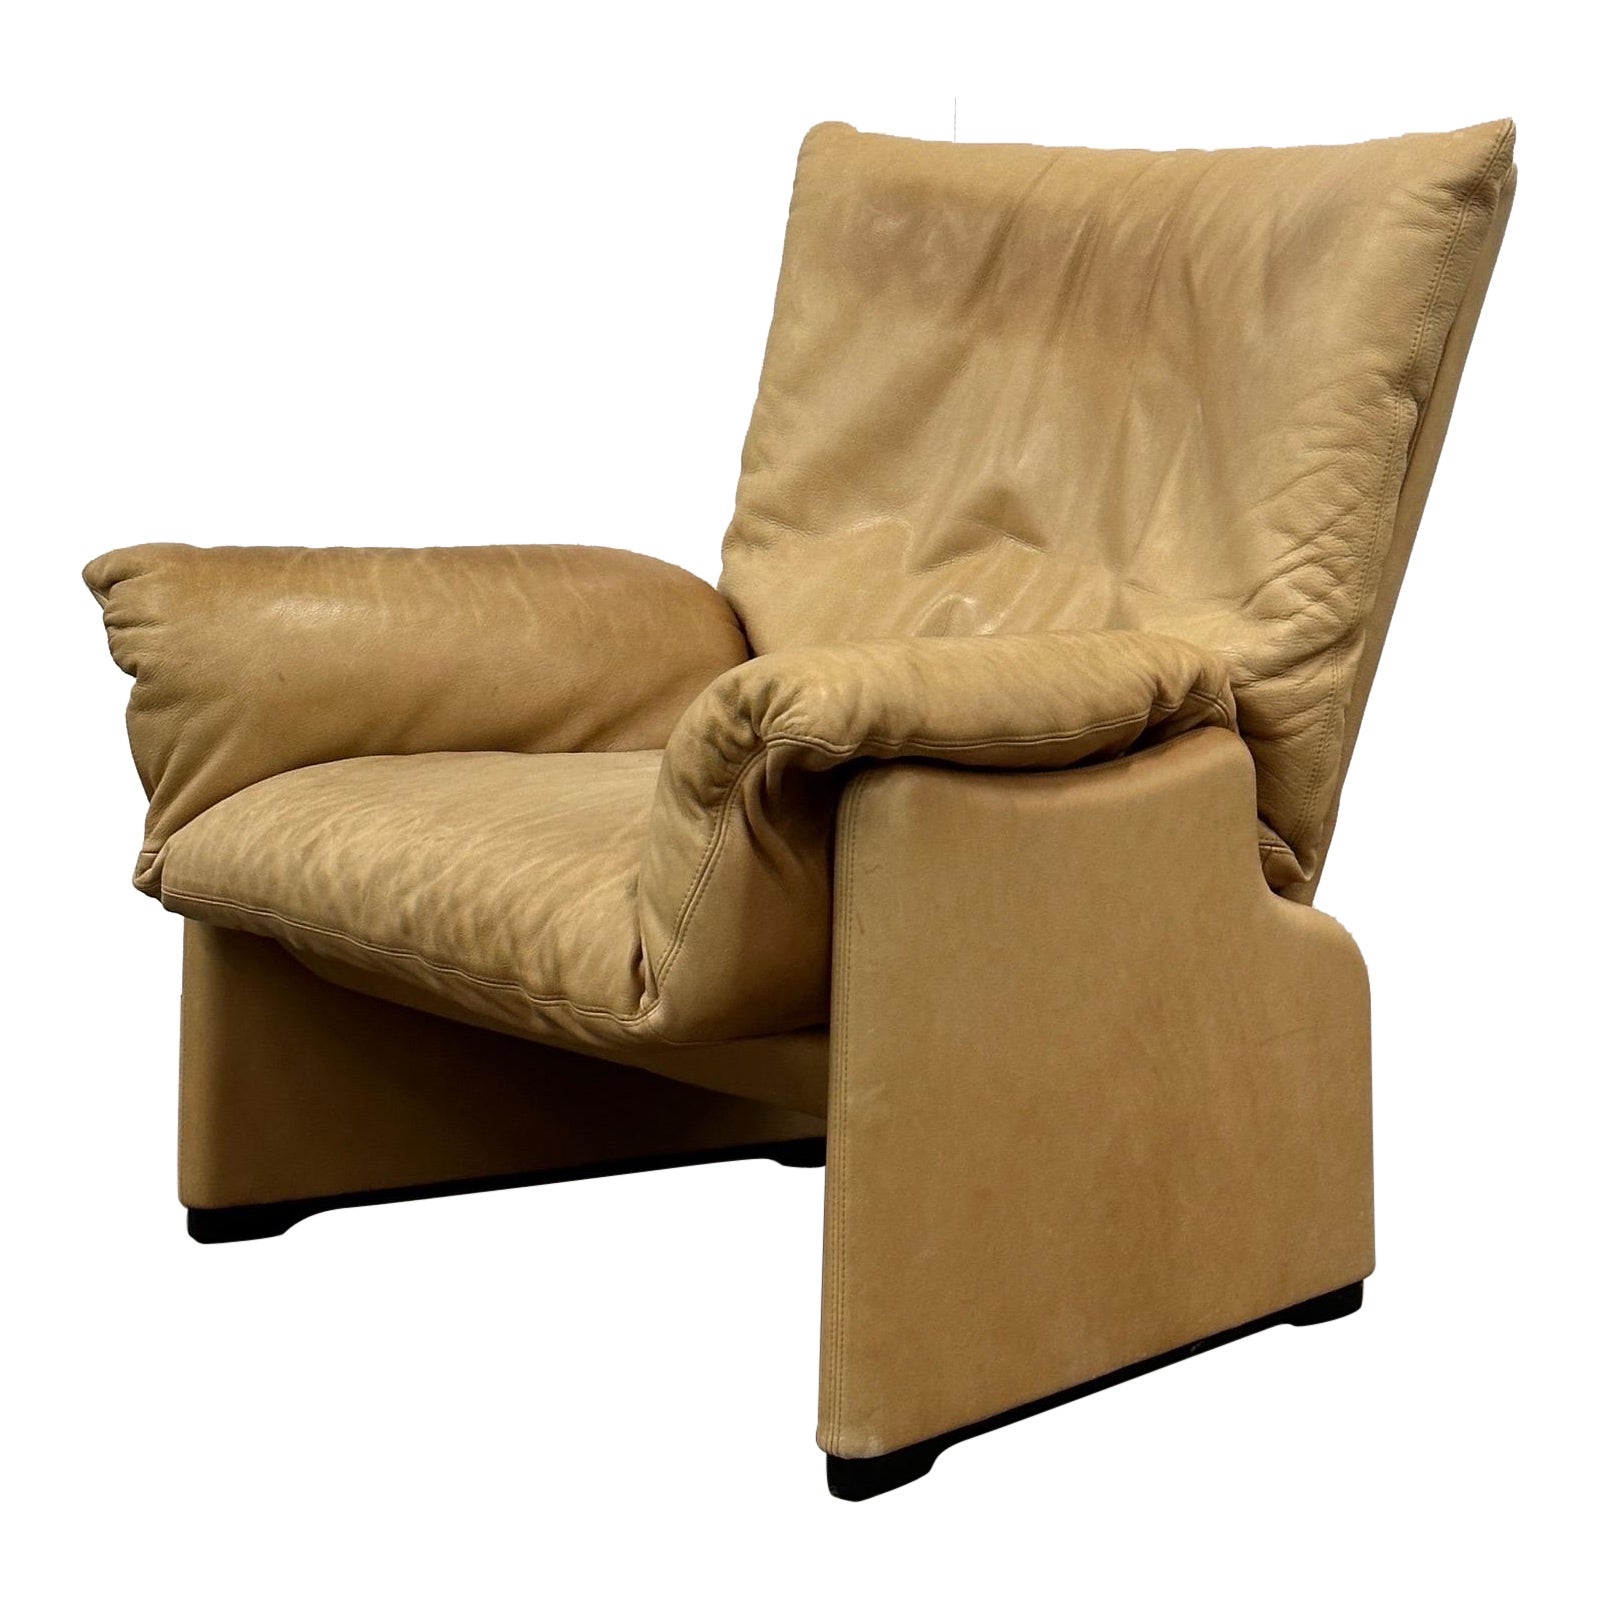 Palmaria-Stuhl von Vico Magistretti für Cassina